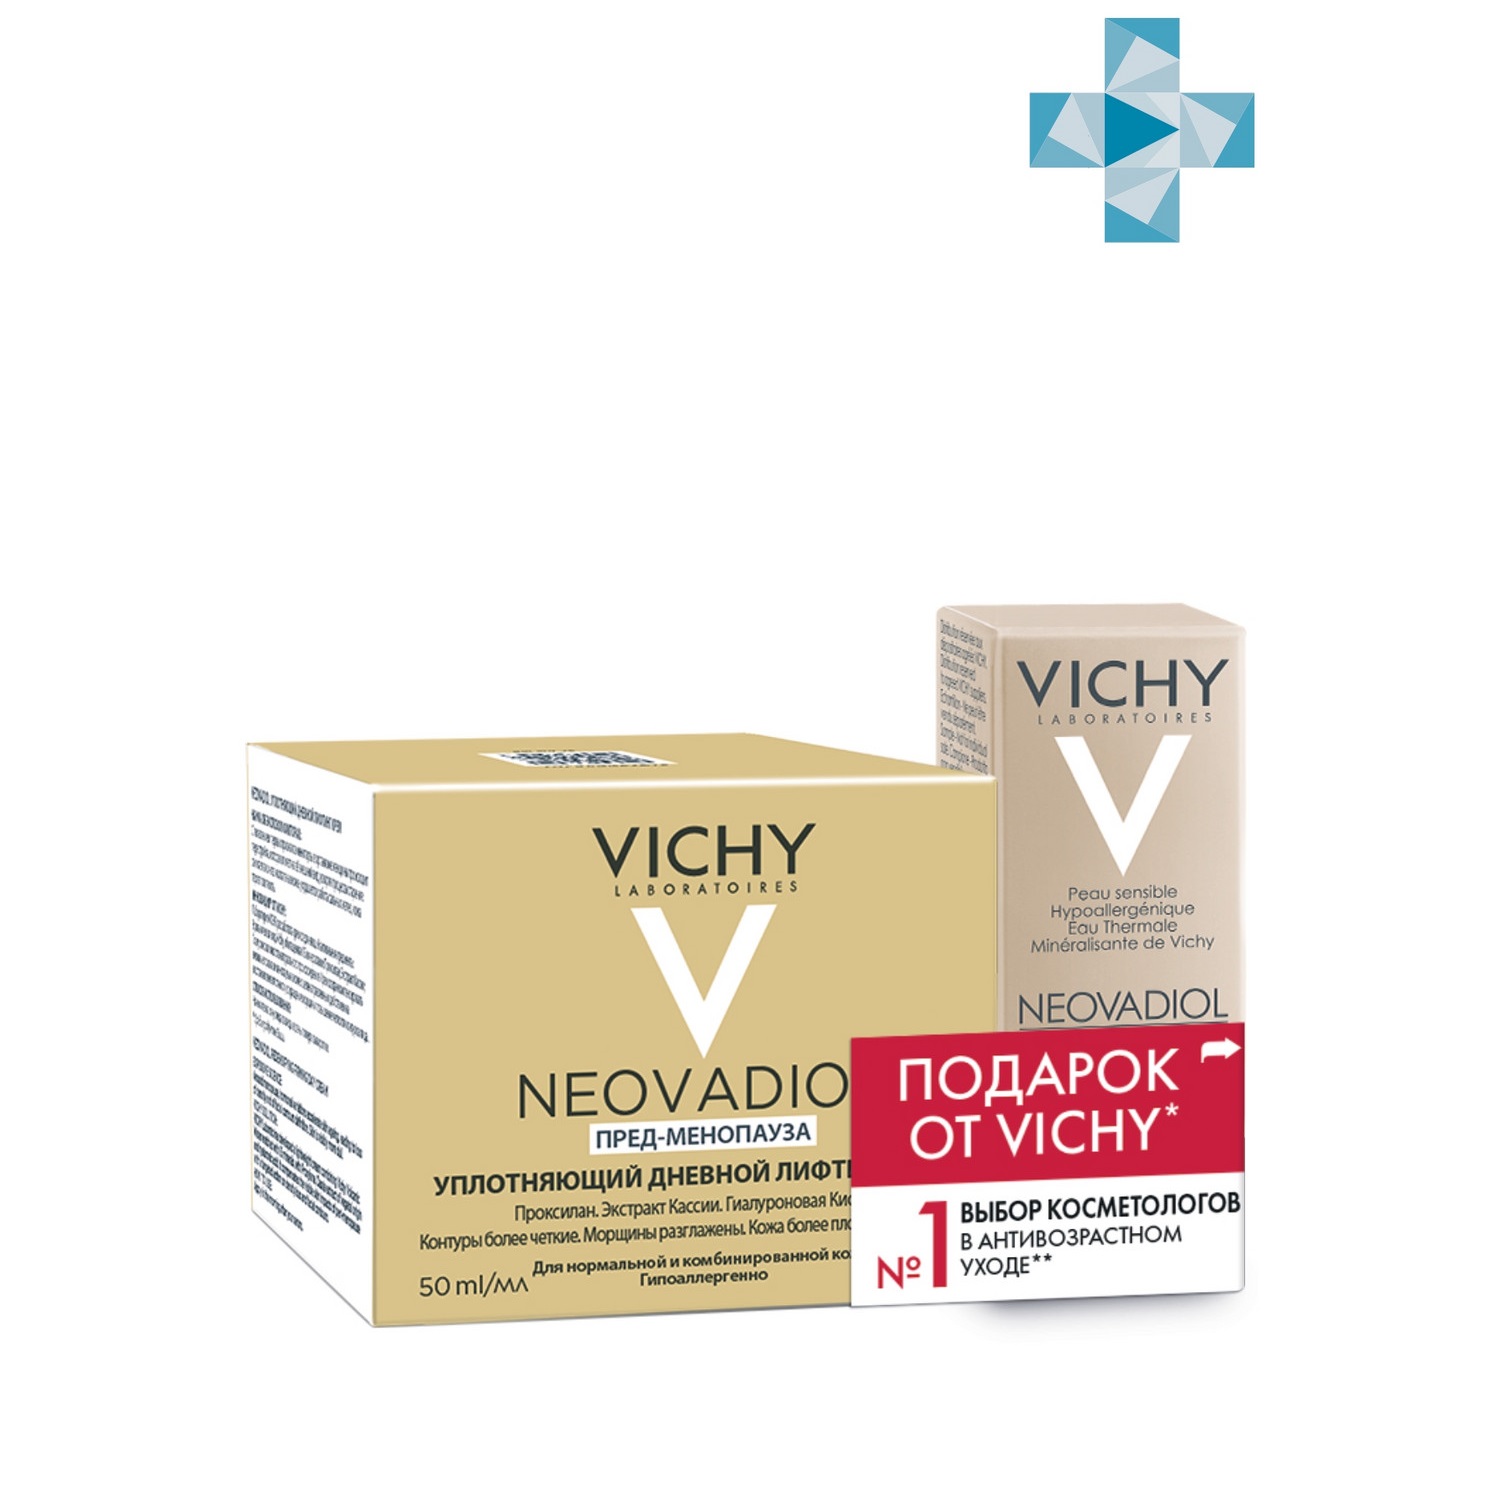 Купить Vichy Набор (уплотняющий дневной лифтинг крем для нормальной и комбинированной кожи 50 мл + сыворотка для кожи в период менопаузы, 10 мл) (Vichy, Neovadiol), Франция